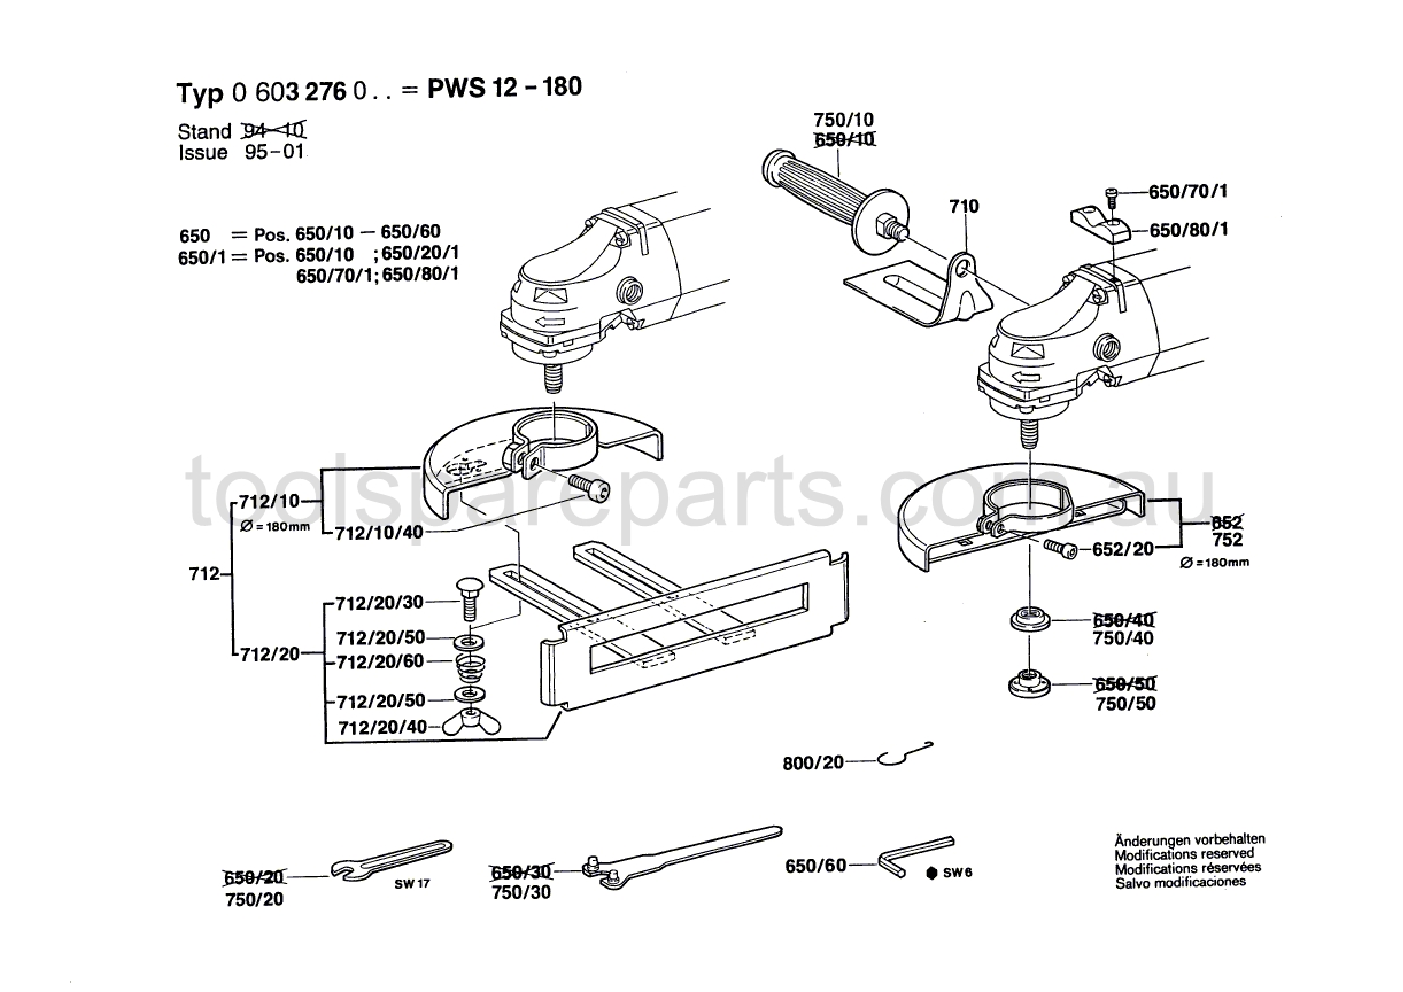 Bosch PWS 12-180 0603276037  Diagram 2